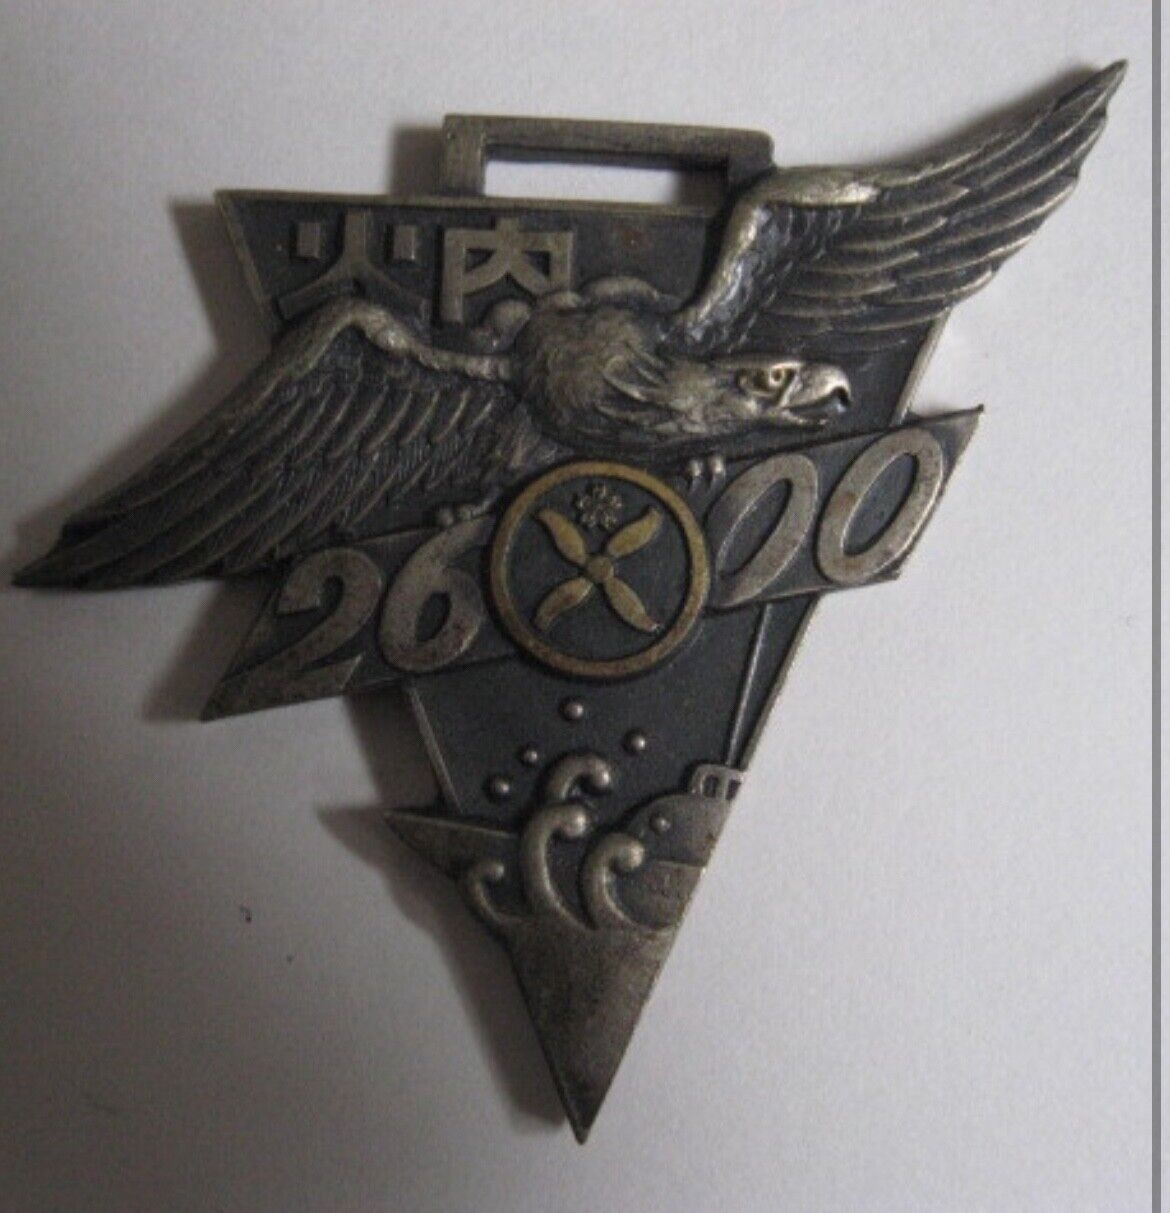 World War II IJN Graduation Medal, 1940, Internal Combustion Engineering